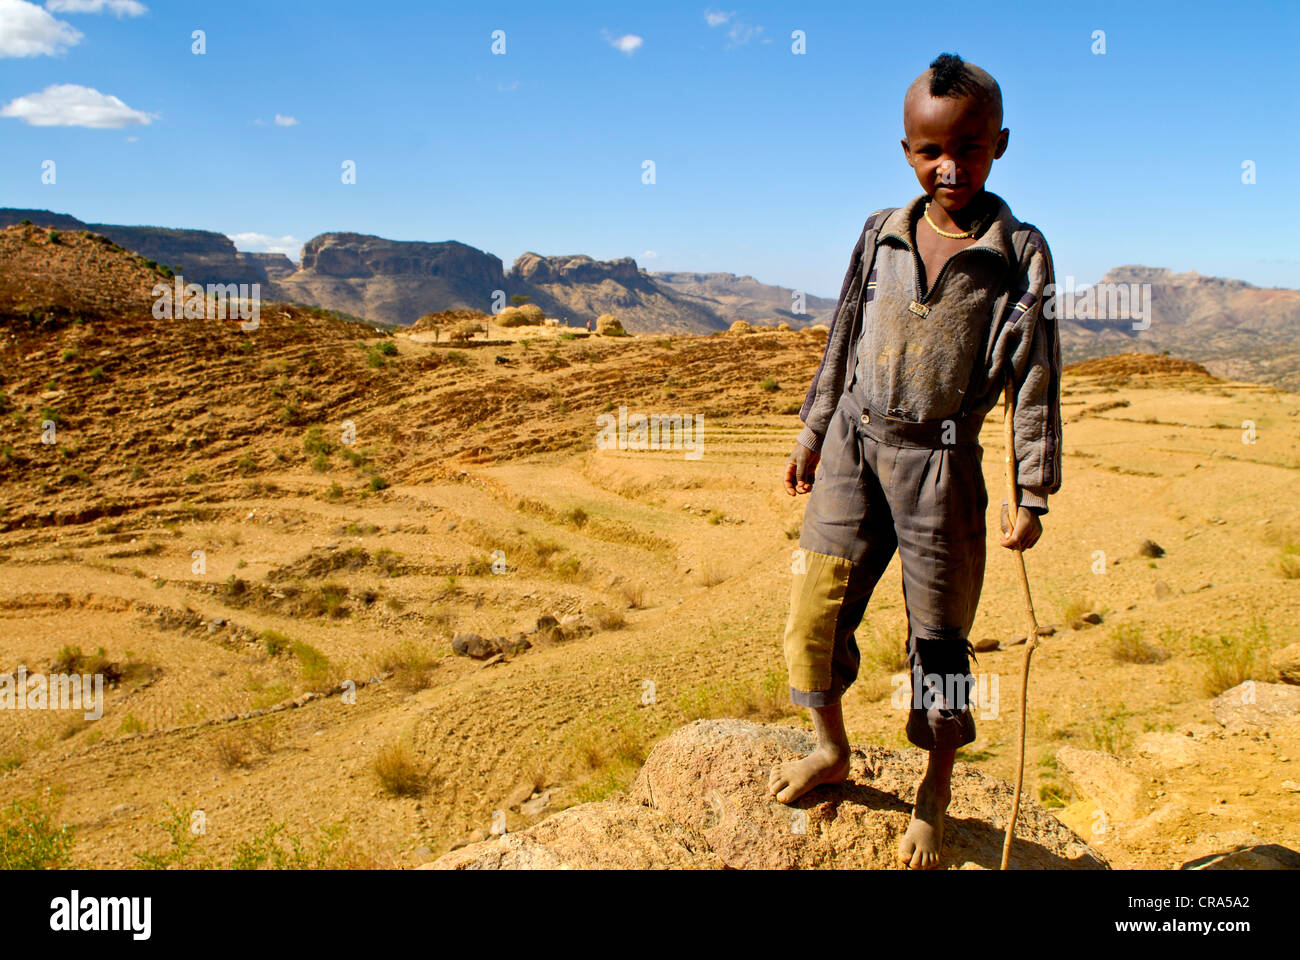 Garçon noir avec une coiffure mohawk debout devant le paysage aride du nord de l'Ethiopie, l'Éthiopie, l'Afrique Banque D'Images